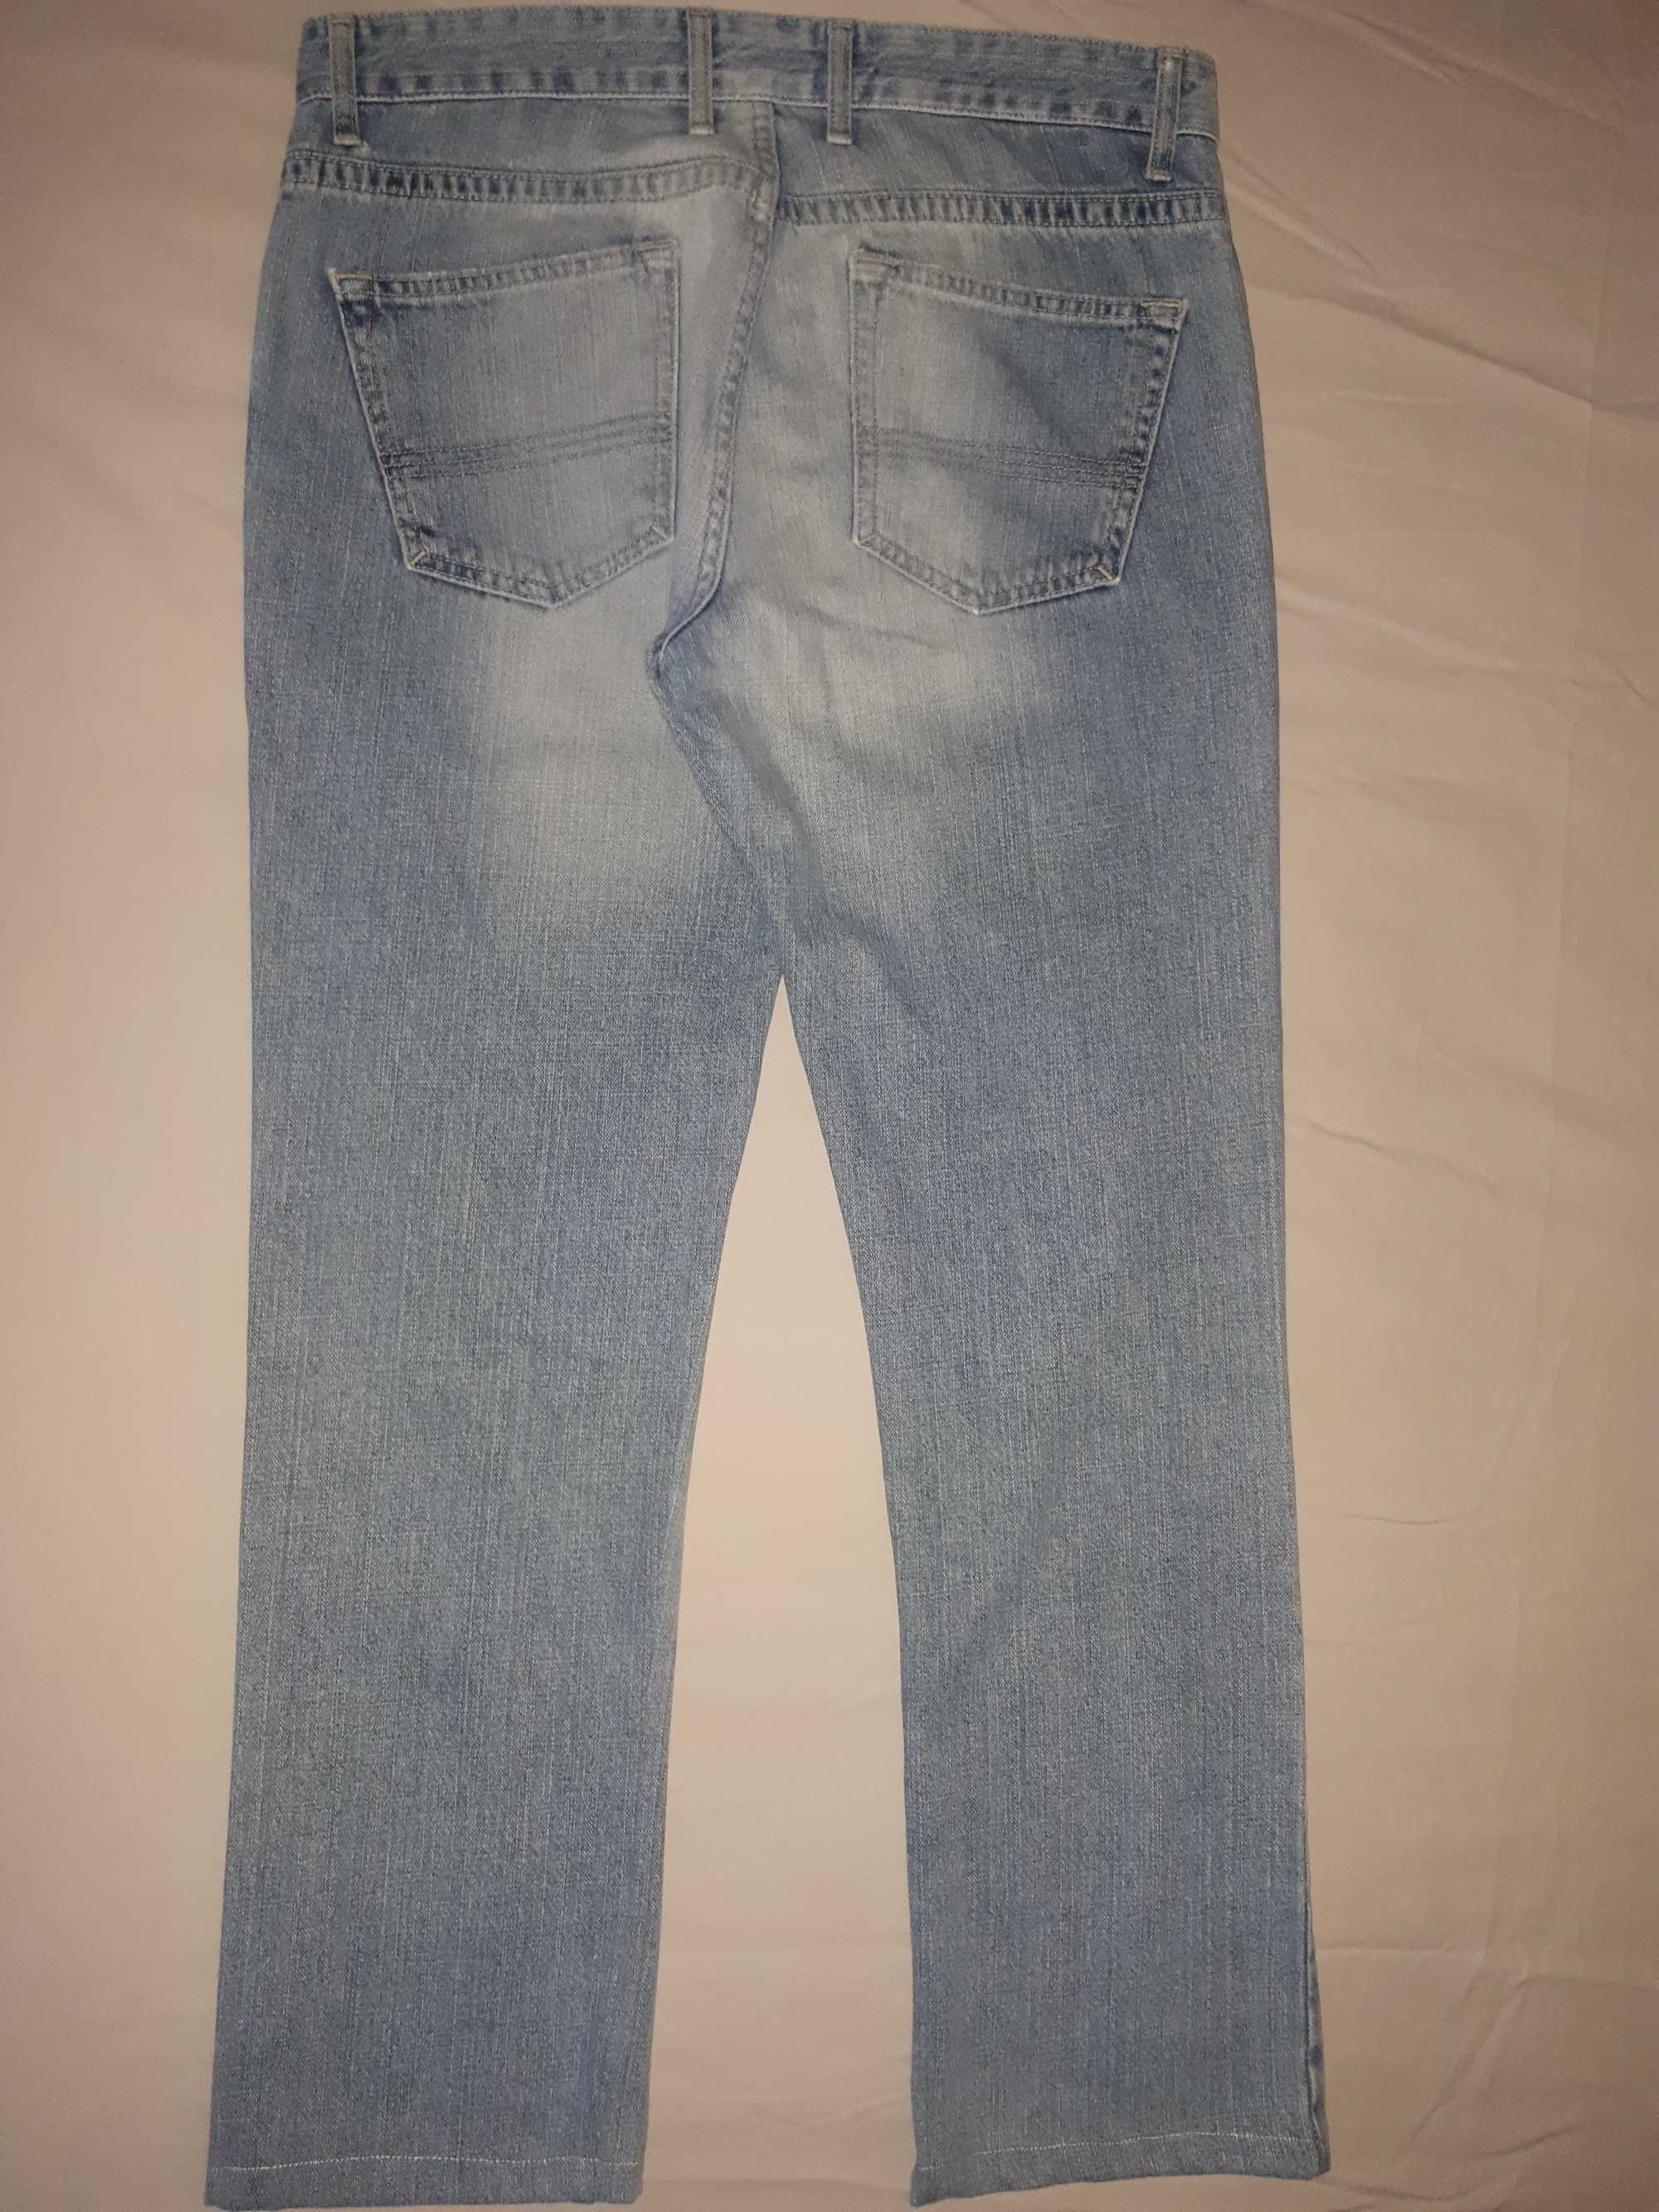 Штаны джинсовые пояс-89 см. длина-100/76 см. брюки